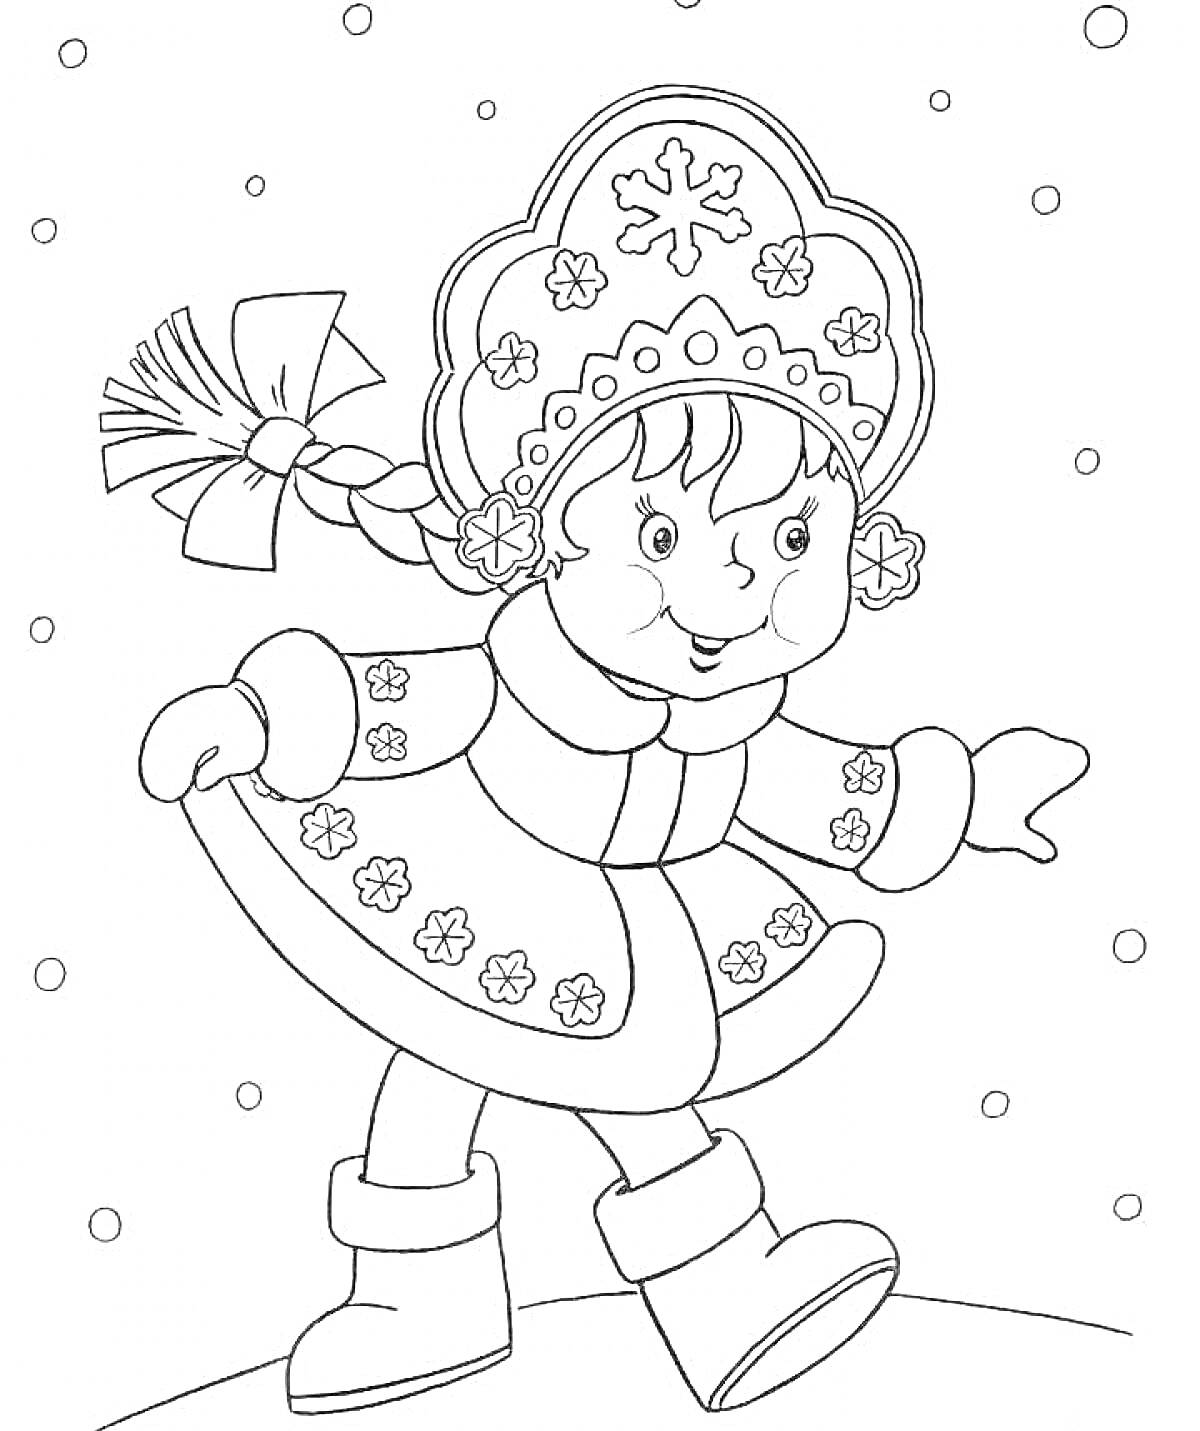 Раскраска Снегурочка в шубке со снежинками и кокошнике, гуляющая на снегу